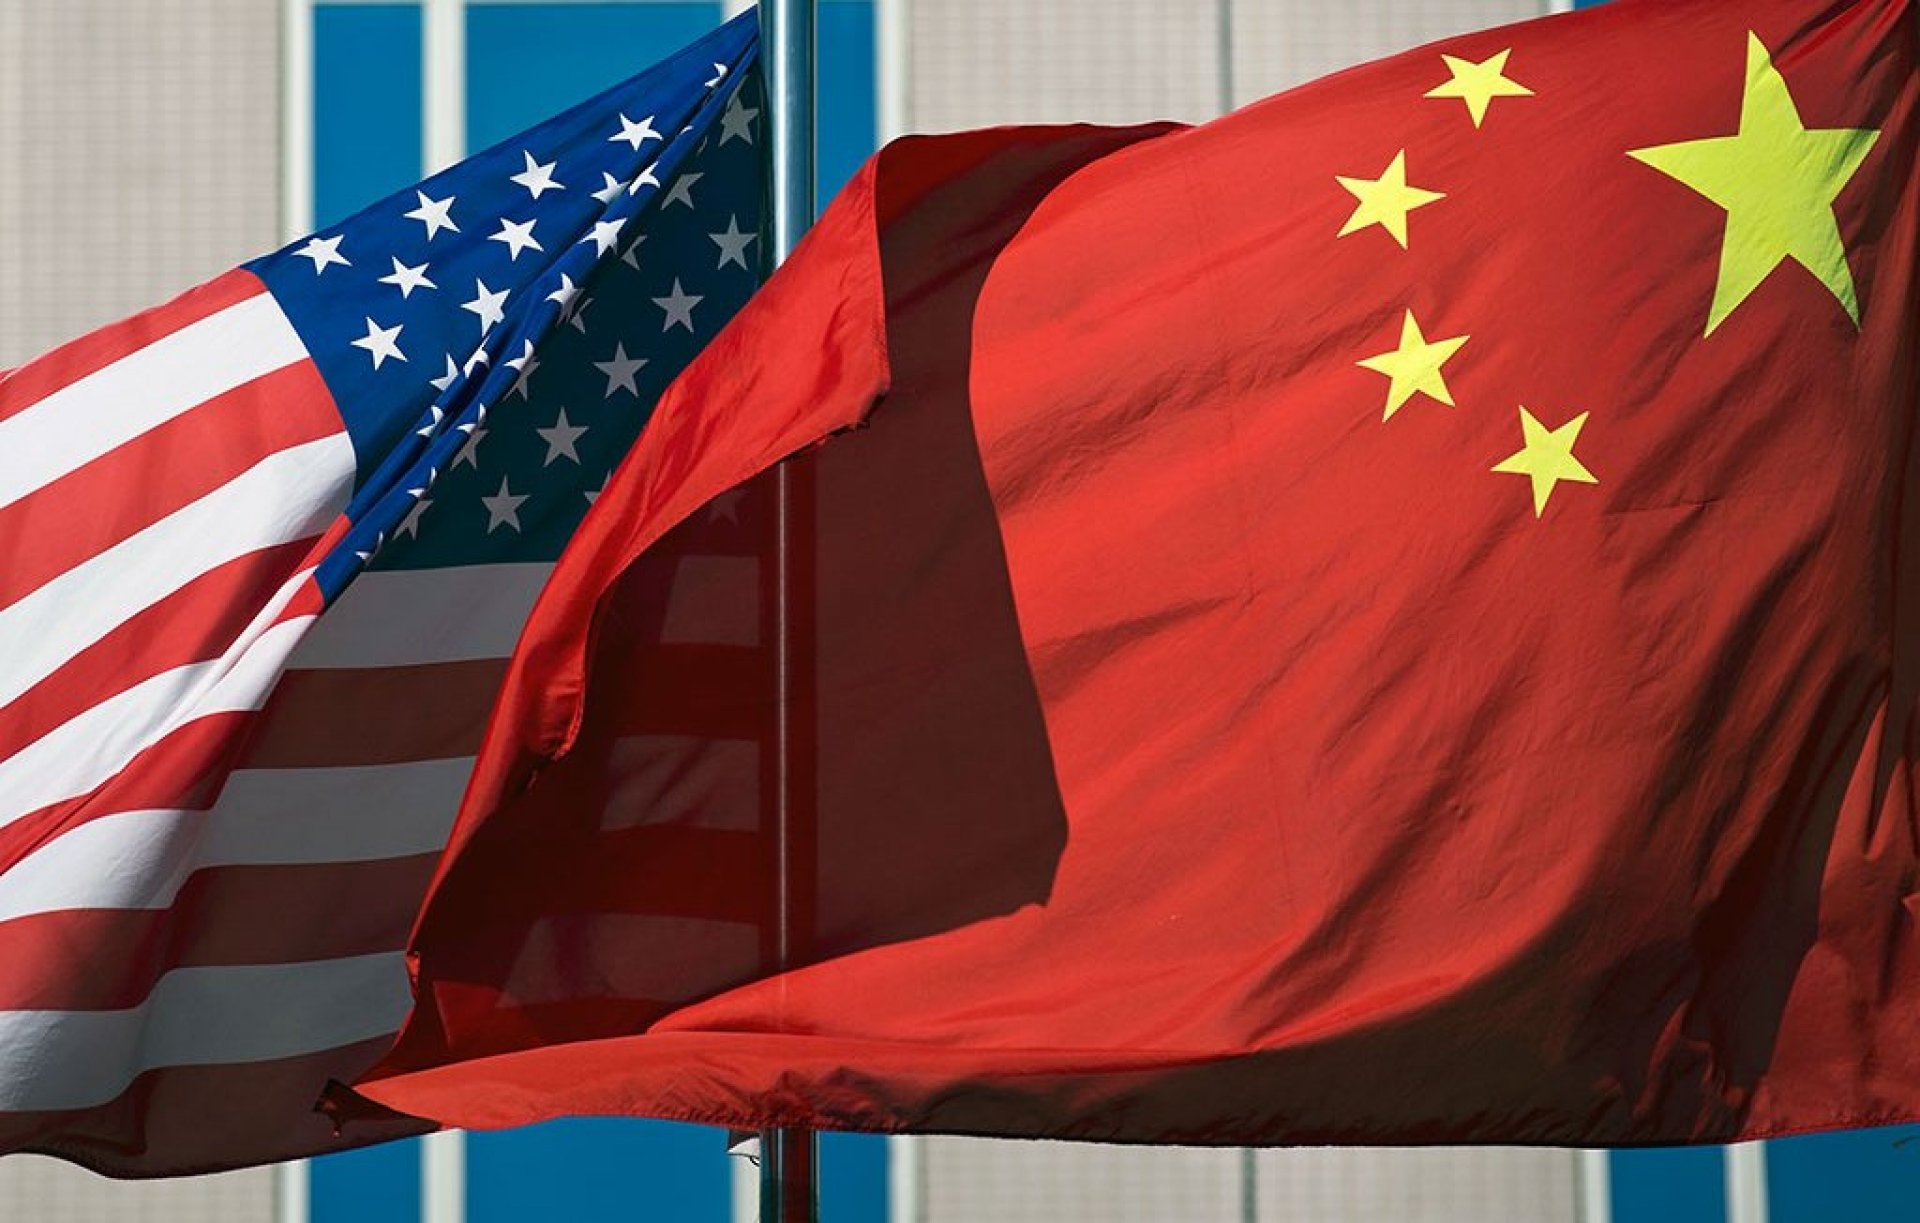 Мировые цены снижаются из-за разногласий между США и КНР